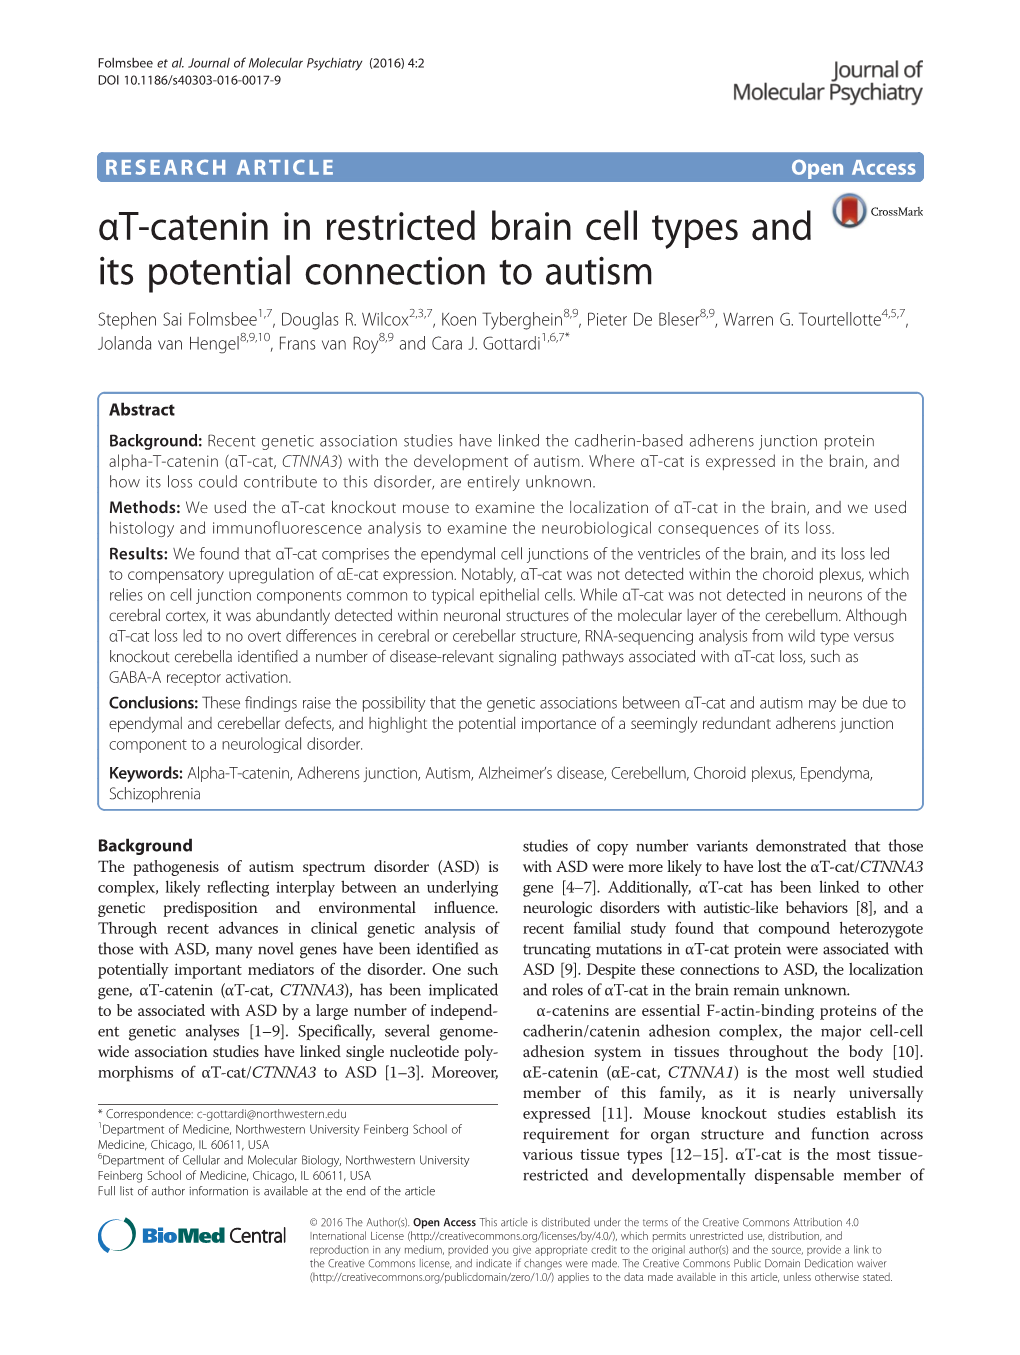 Αt-Catenin in Restricted Brain Cell Types and Its Potential Connection to Autism Stephen Sai Folmsbee1,7, Douglas R